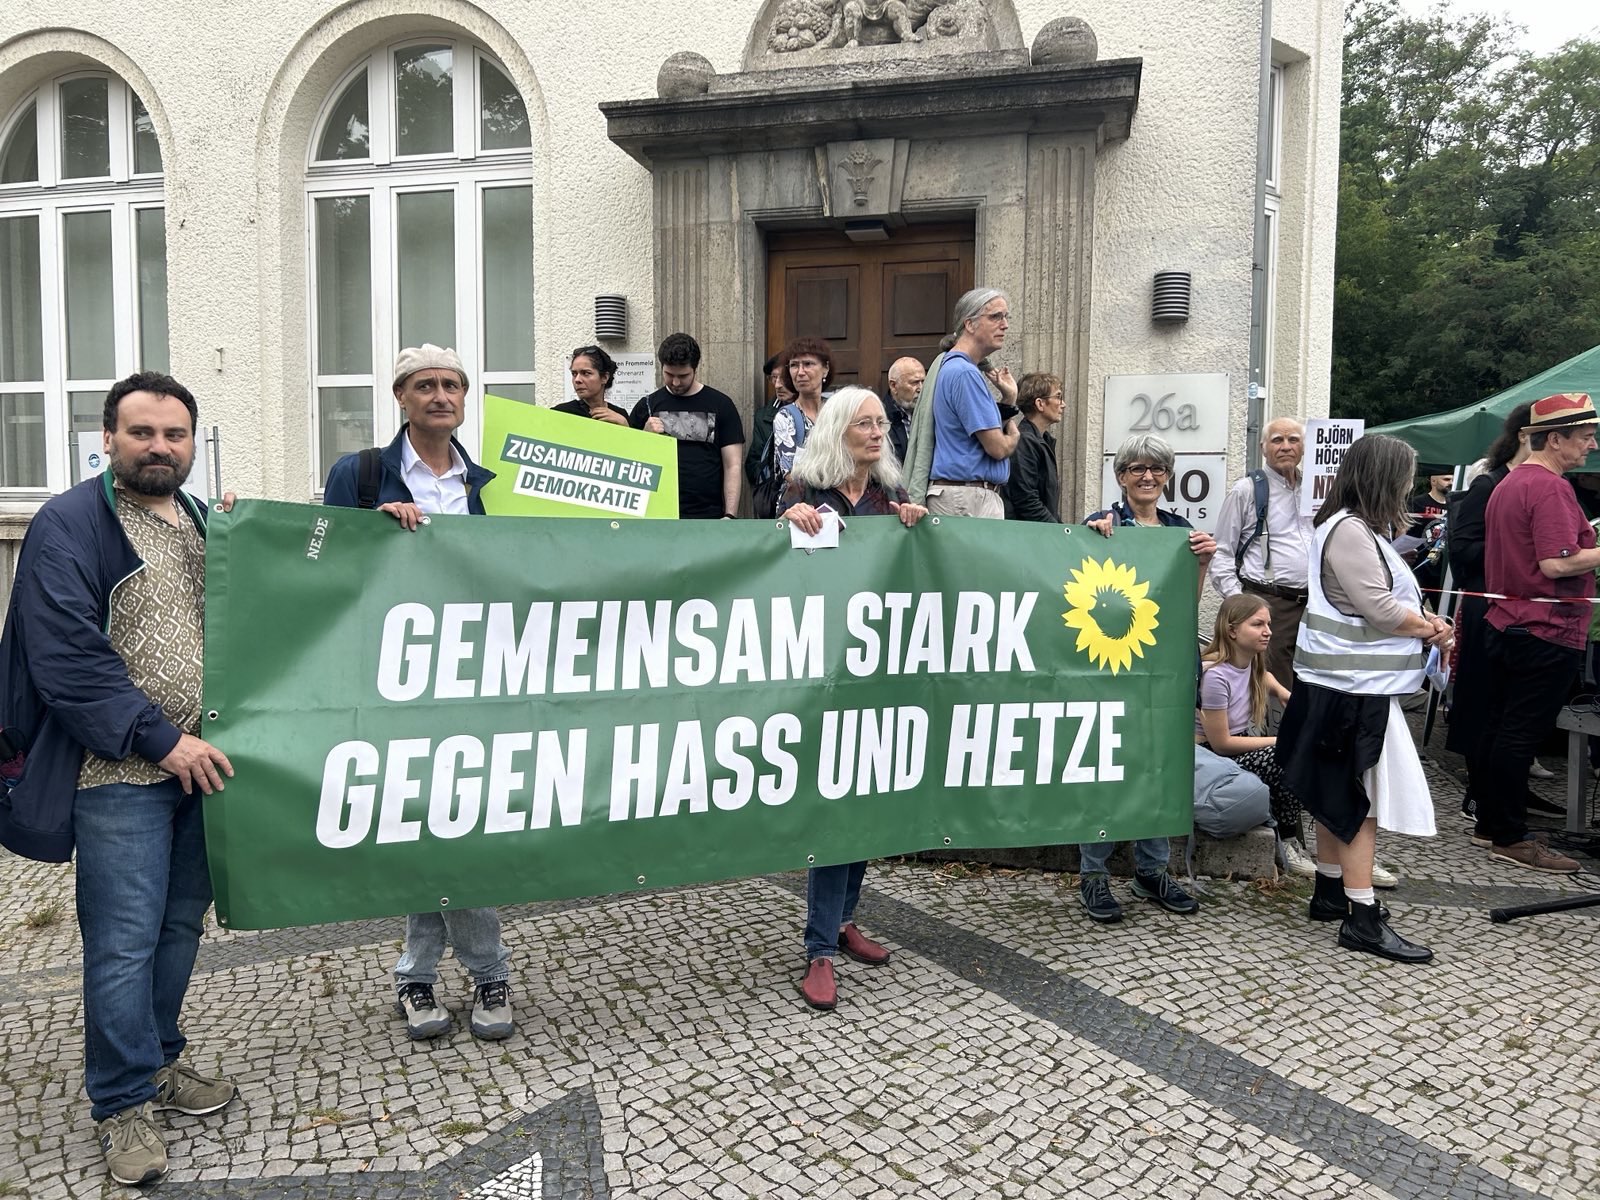 Demoteilnehmer*innen mit einem Plakat "Gemeinsam stark gegen Hass und Hetze".